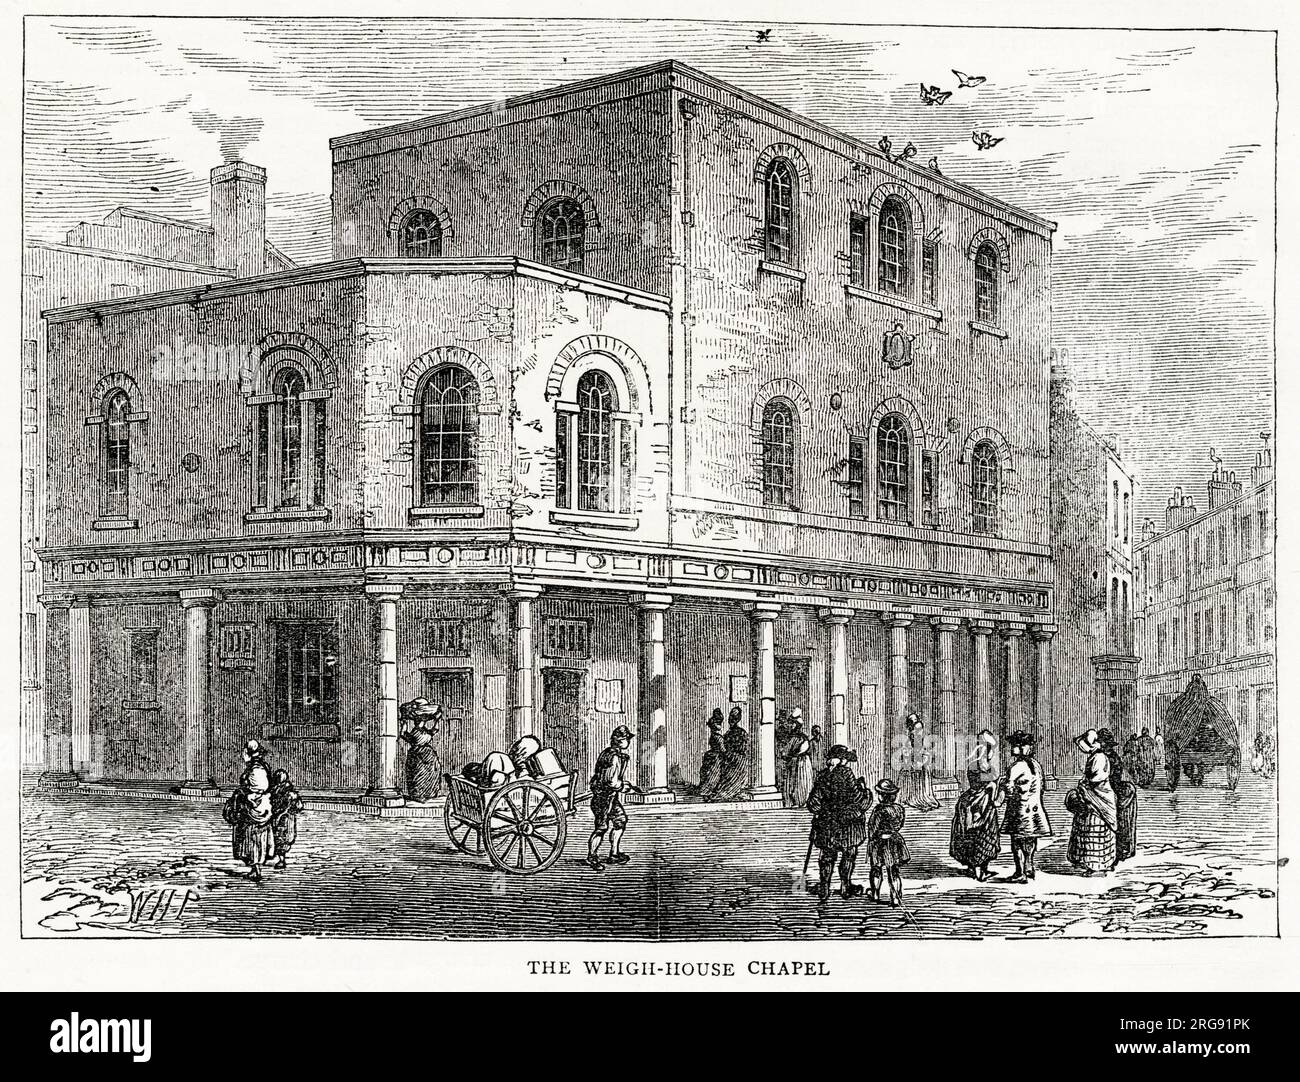 Die alte King's Weigh House Chapel, Little Eastcheap, London. Früher war es die übliche Praxis, dass Waren, die von ausländischen Händlern nach London gebracht wurden, in Anwesenheit von vereidigten Beamten am Balken des Königs gewogen wurden. Stockfoto